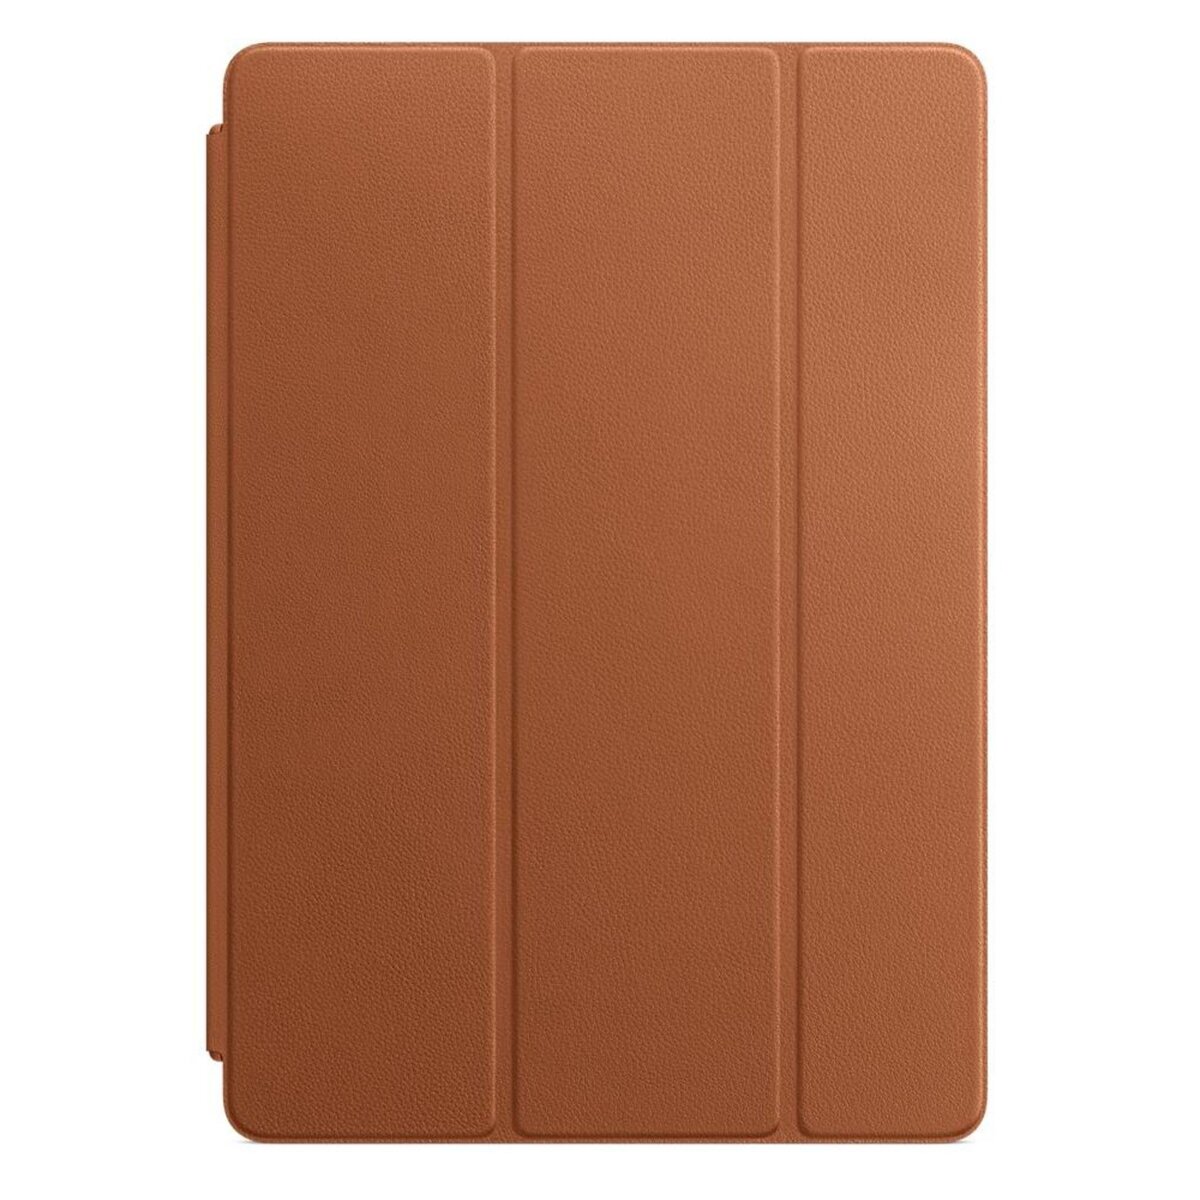 APPLE Protection tablette pour iPad Pro 10.5 pouces - Marron